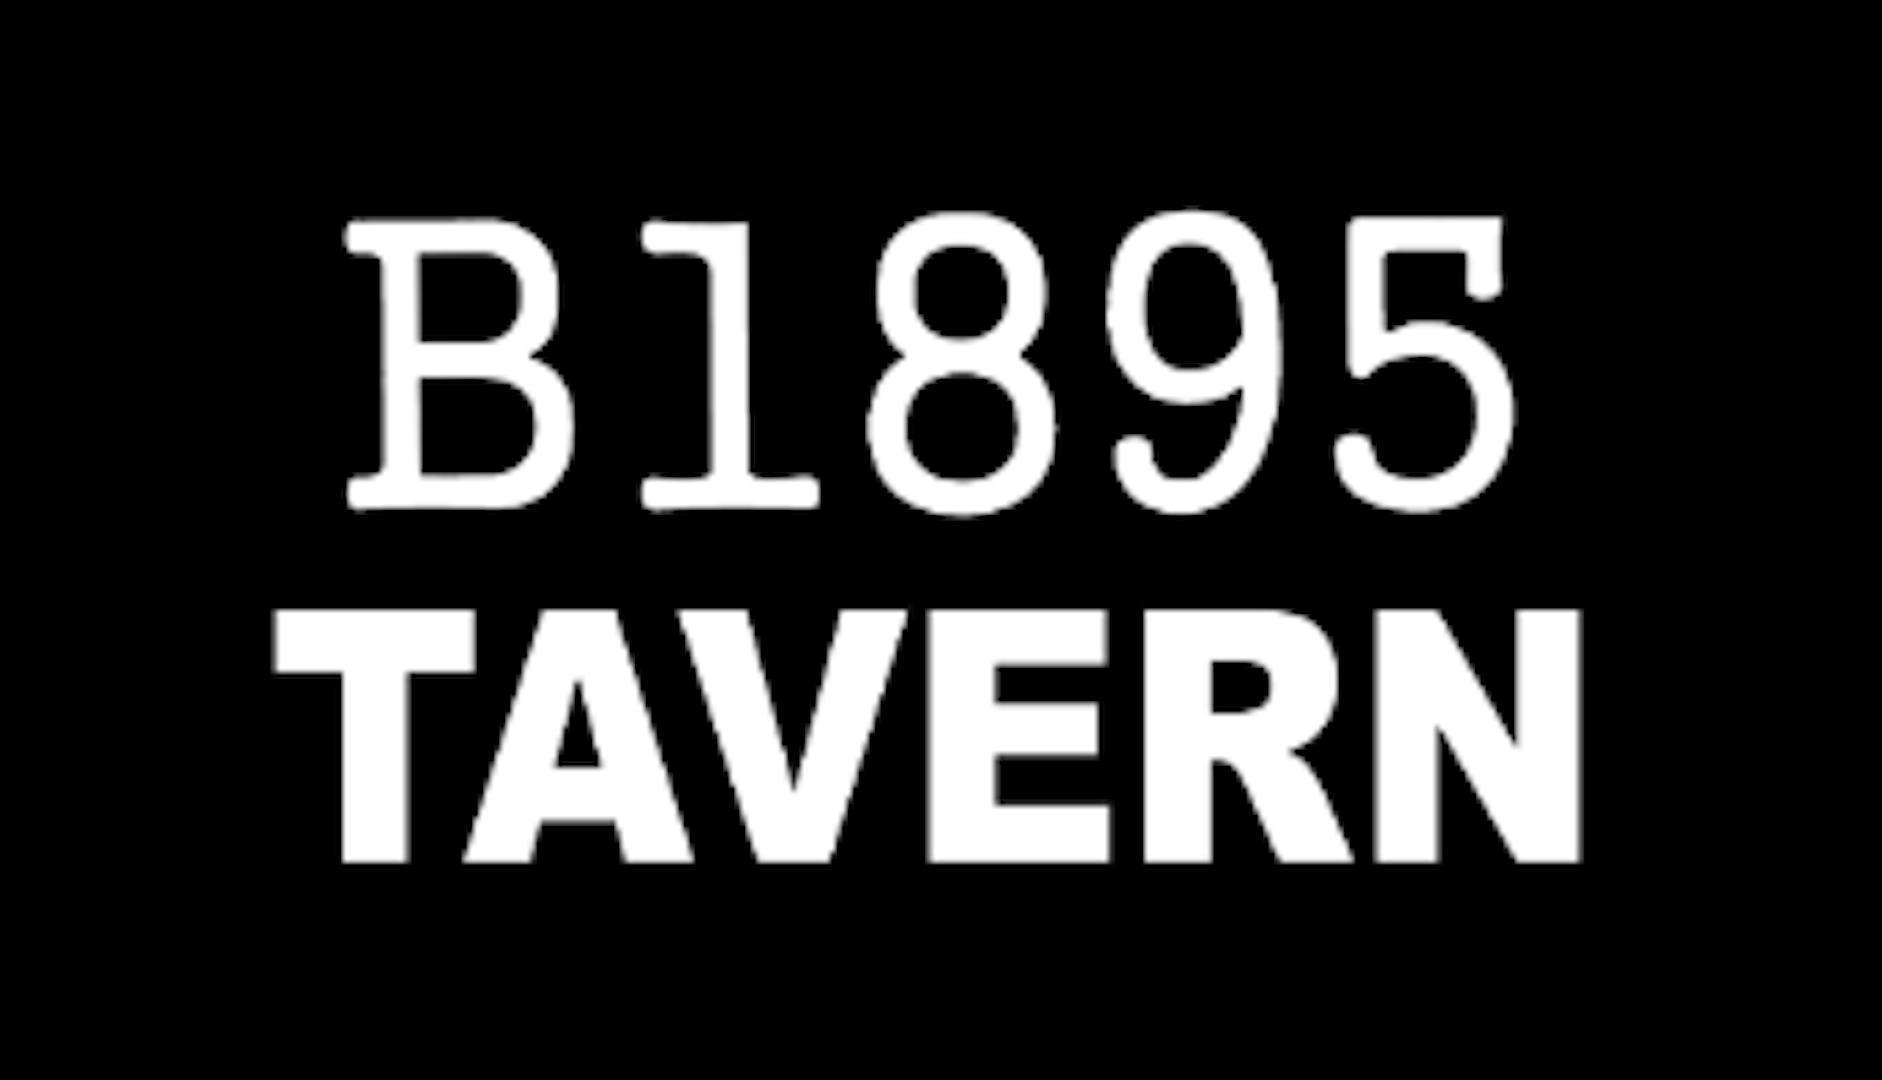 B1895 Tavern